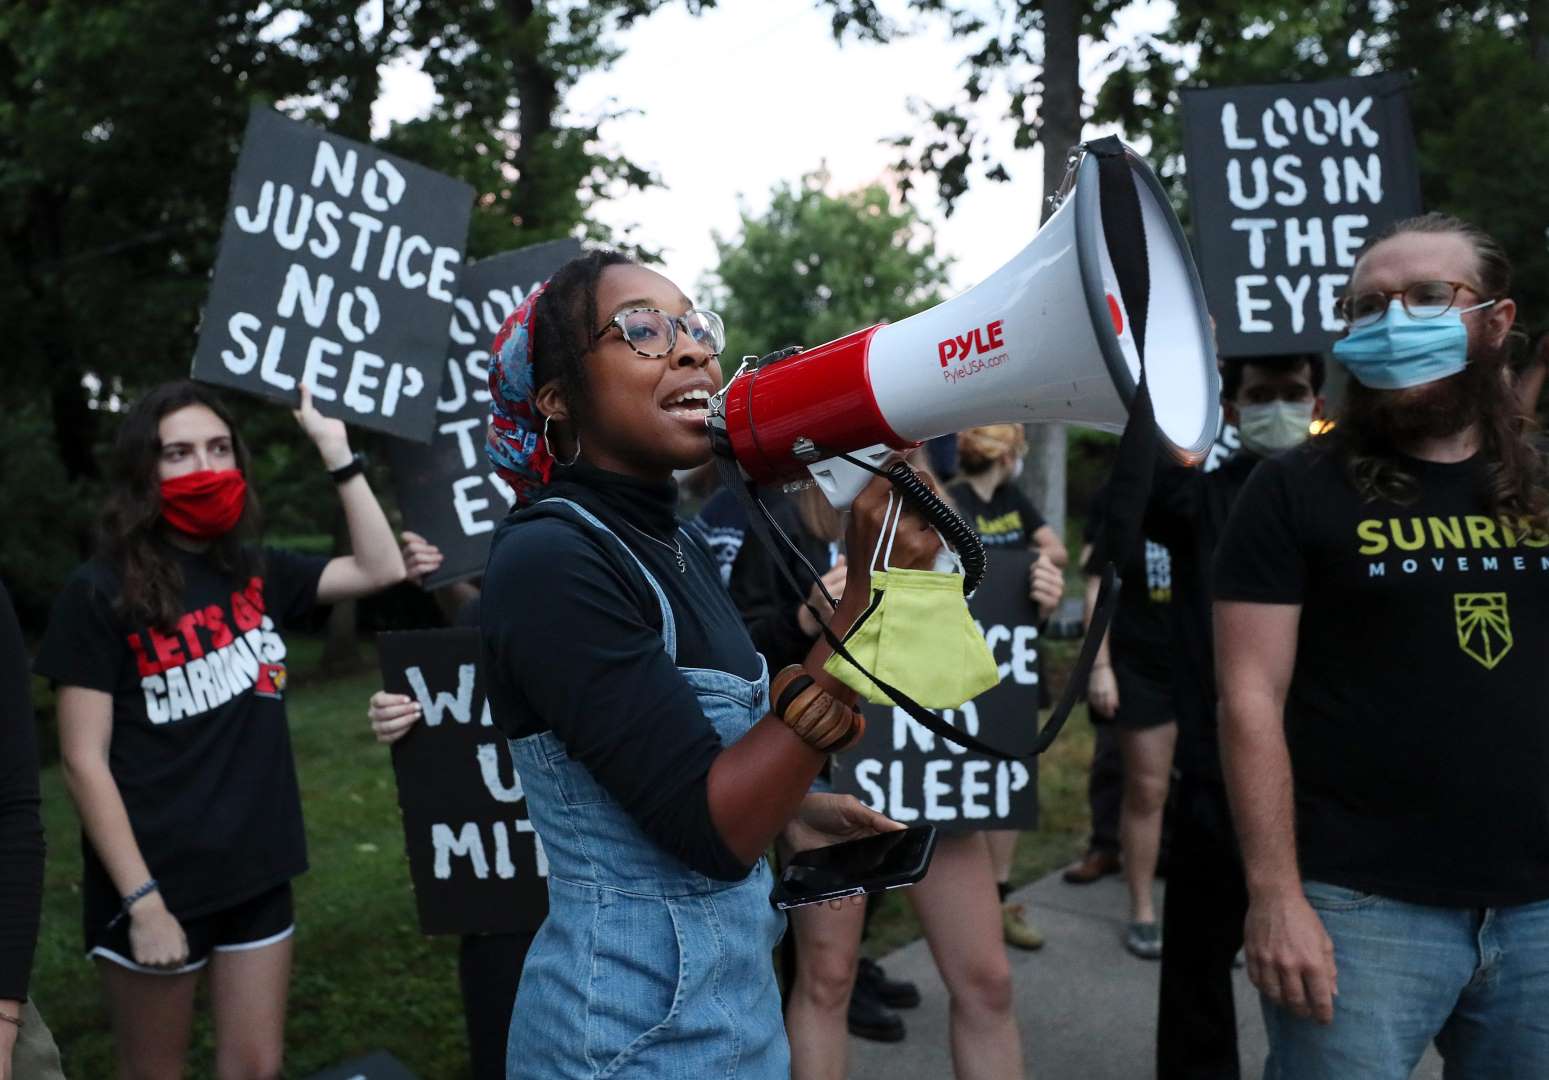 Een activist van Sunrise spreekt in een megafoon terwijl mededemonstranten achter borden staan ​​met de tekst "No Justice No Sleep" en "Look Us In The Eyes".